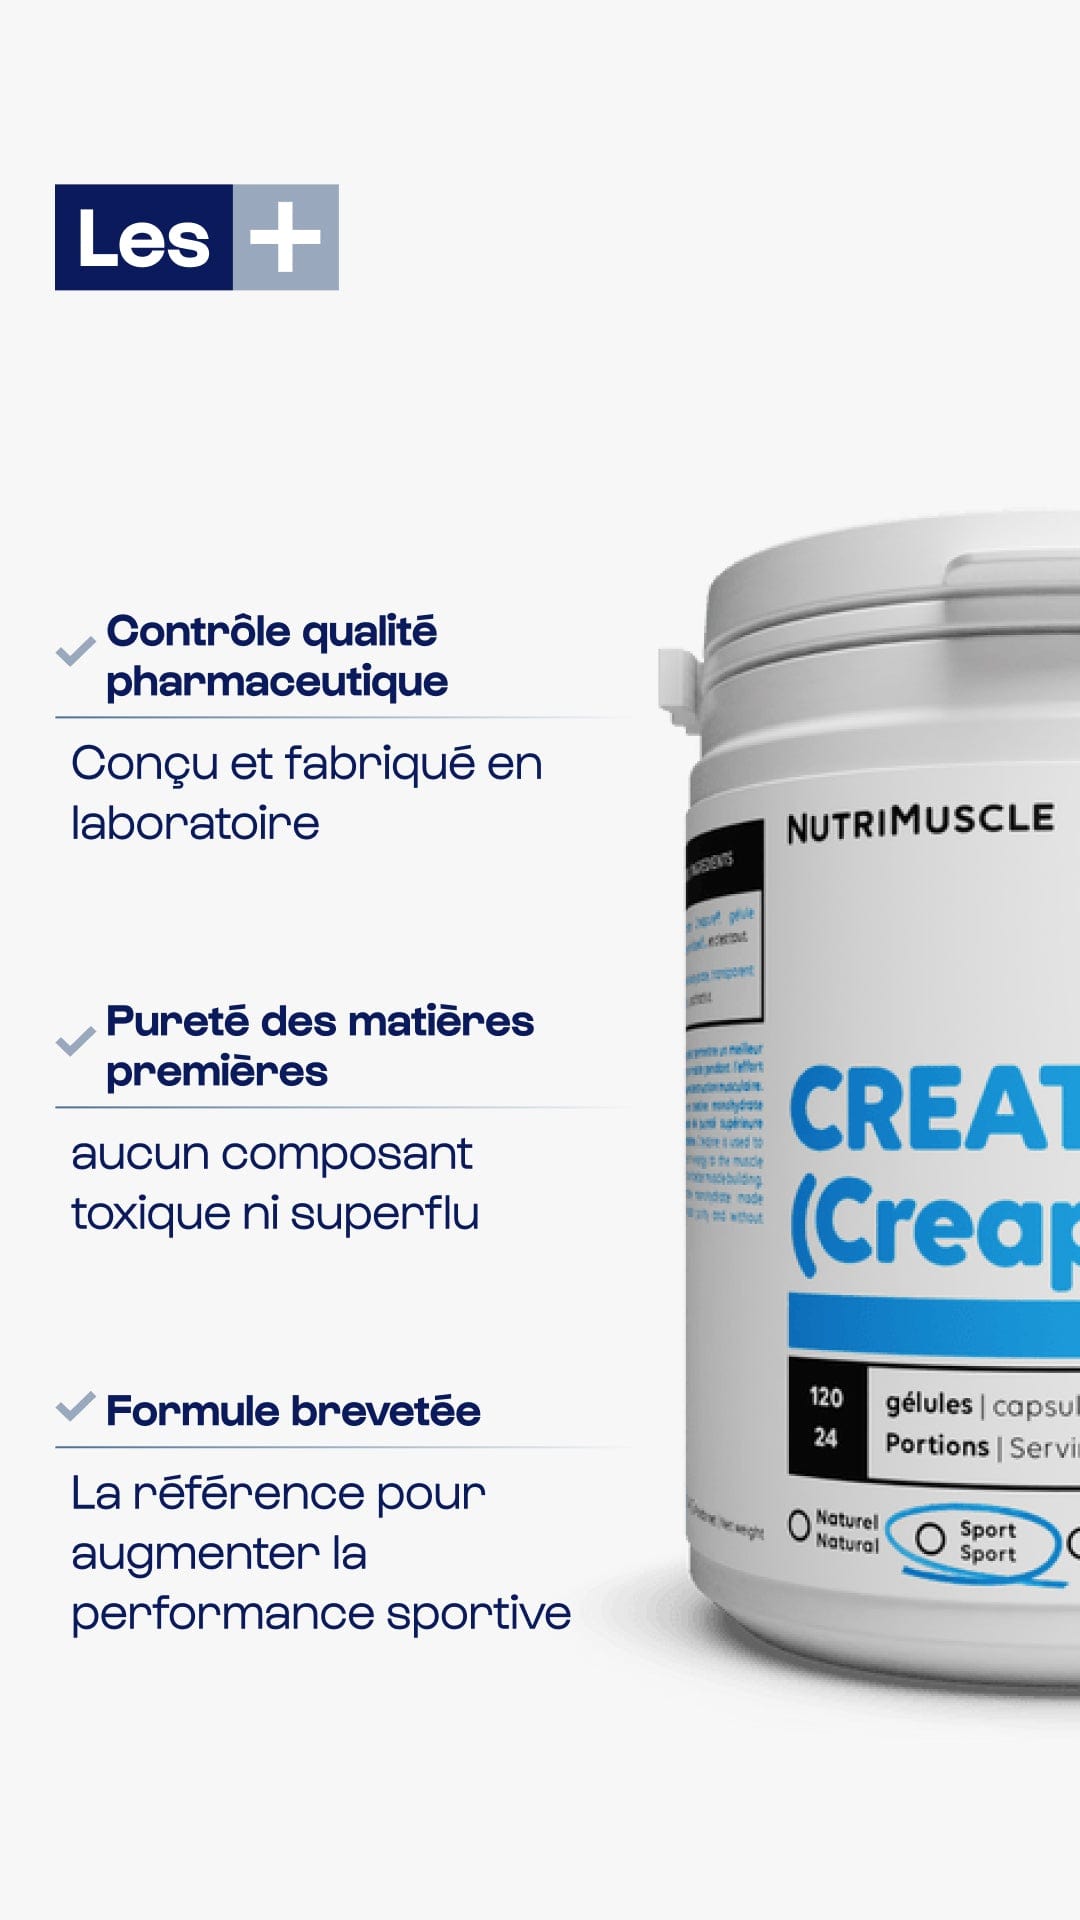 Nutrimuscle Acides aminés Créatine (Creapure®) en poudre